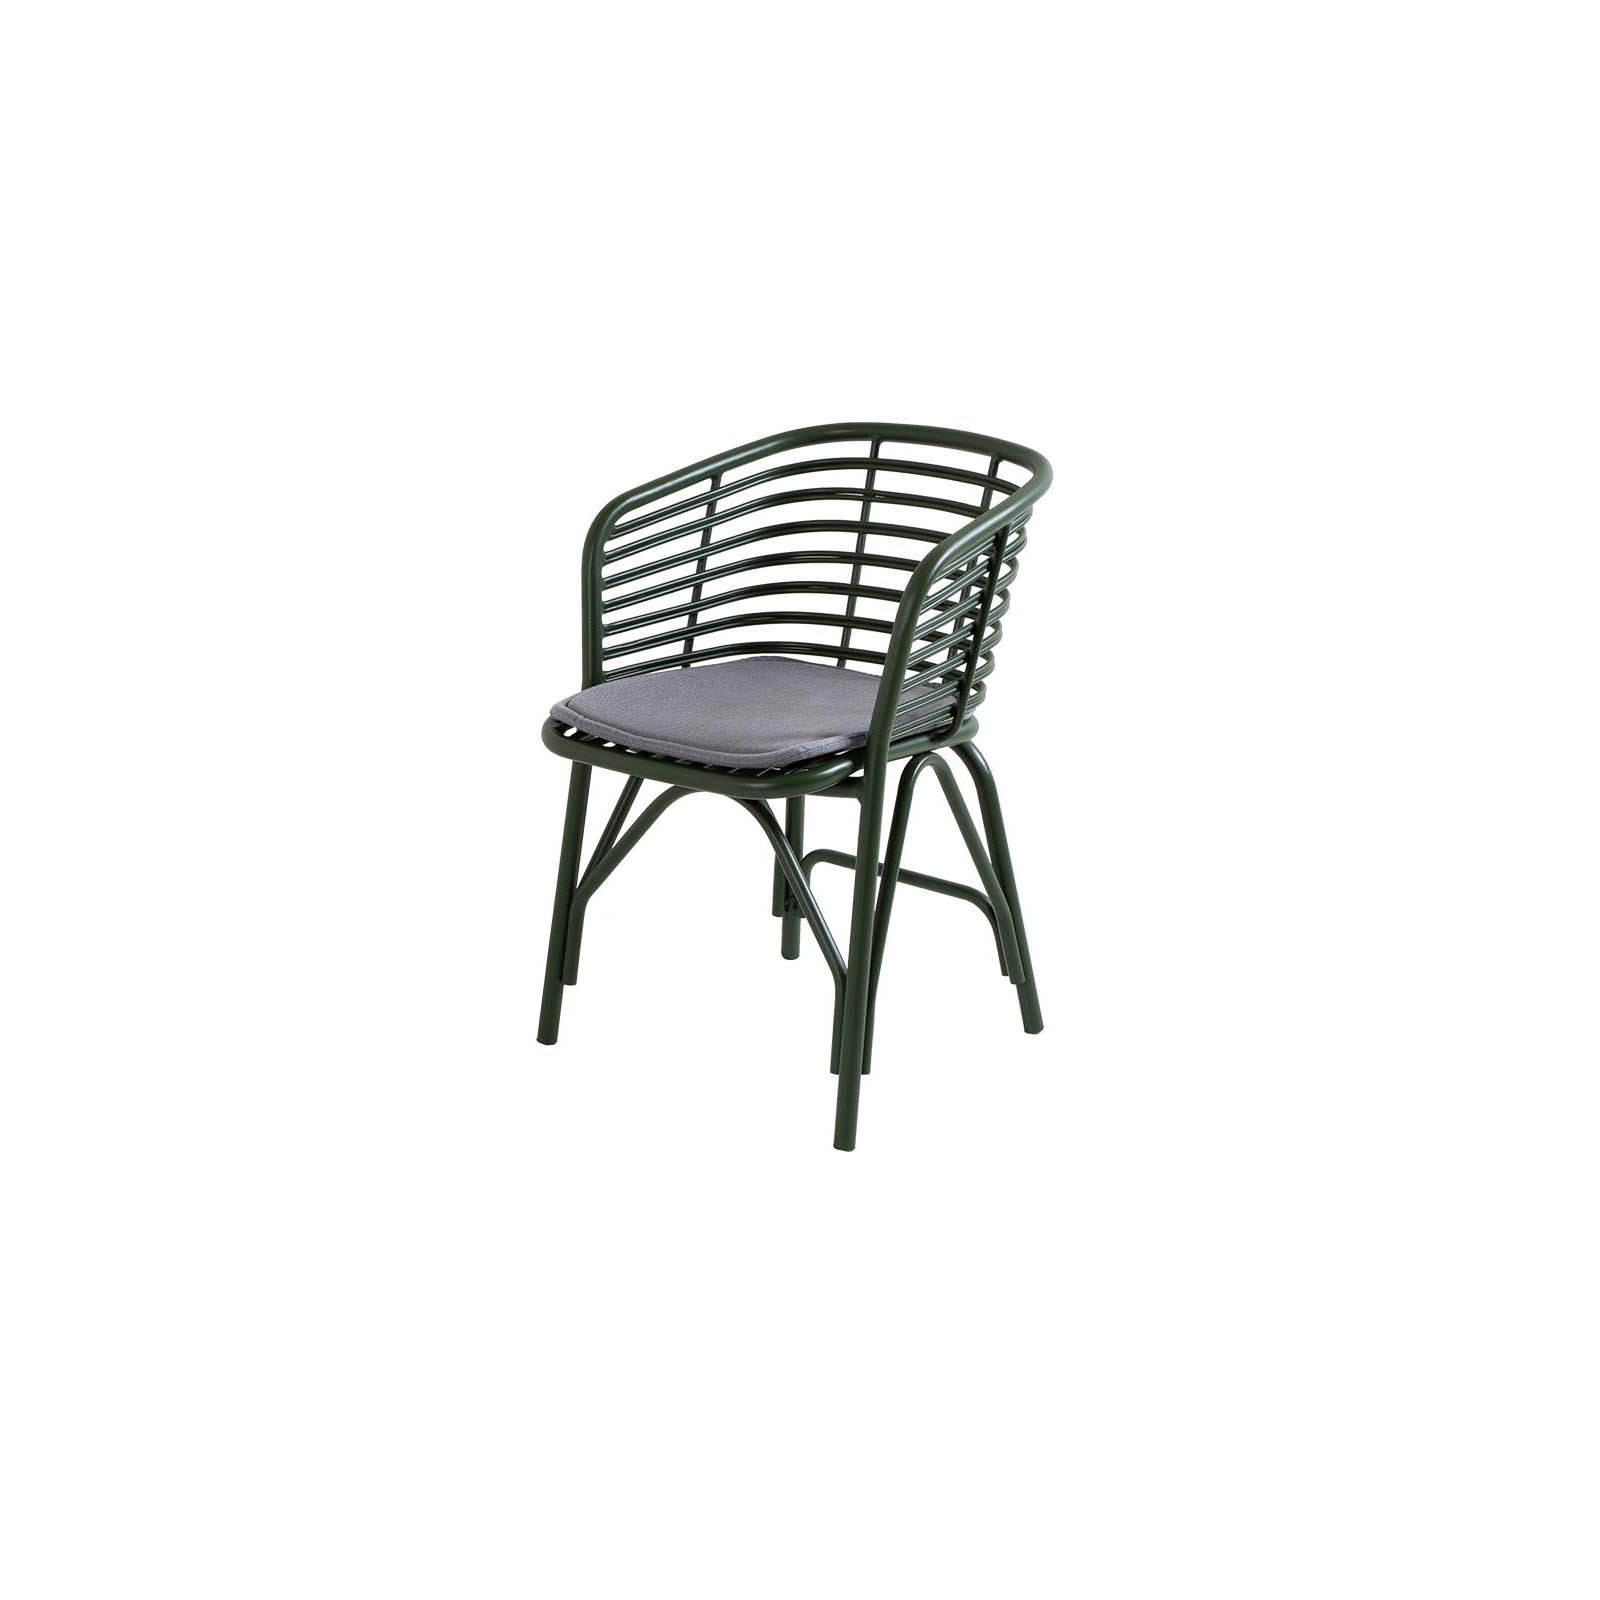 Blend Stuhl aus Aluminium in Dark Green mit Kissen aus Cane-line Natté in Grey